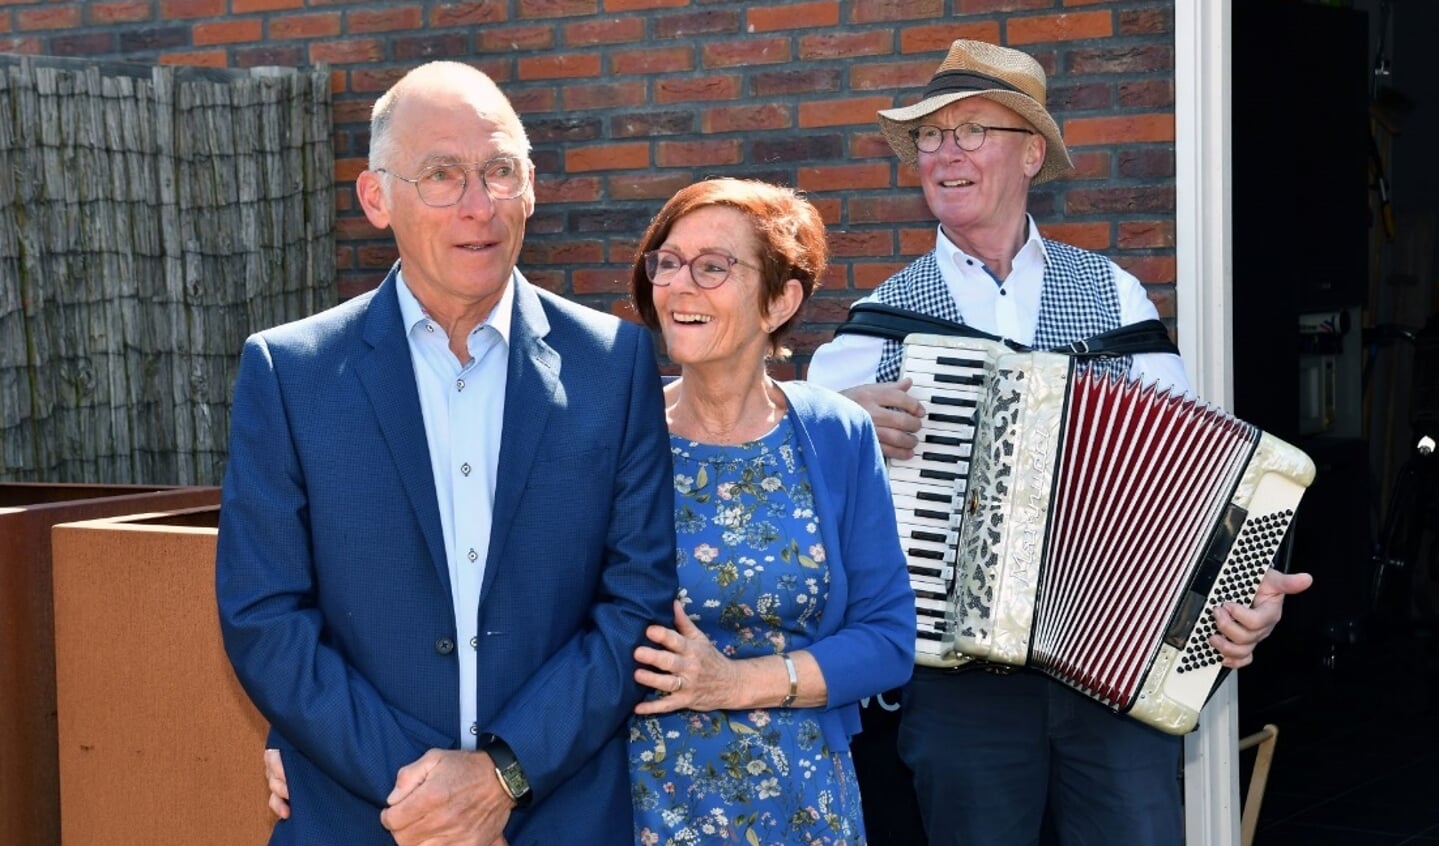 Jos Mathot en zijn vrouw worden toegespeeld door de accordeonist.